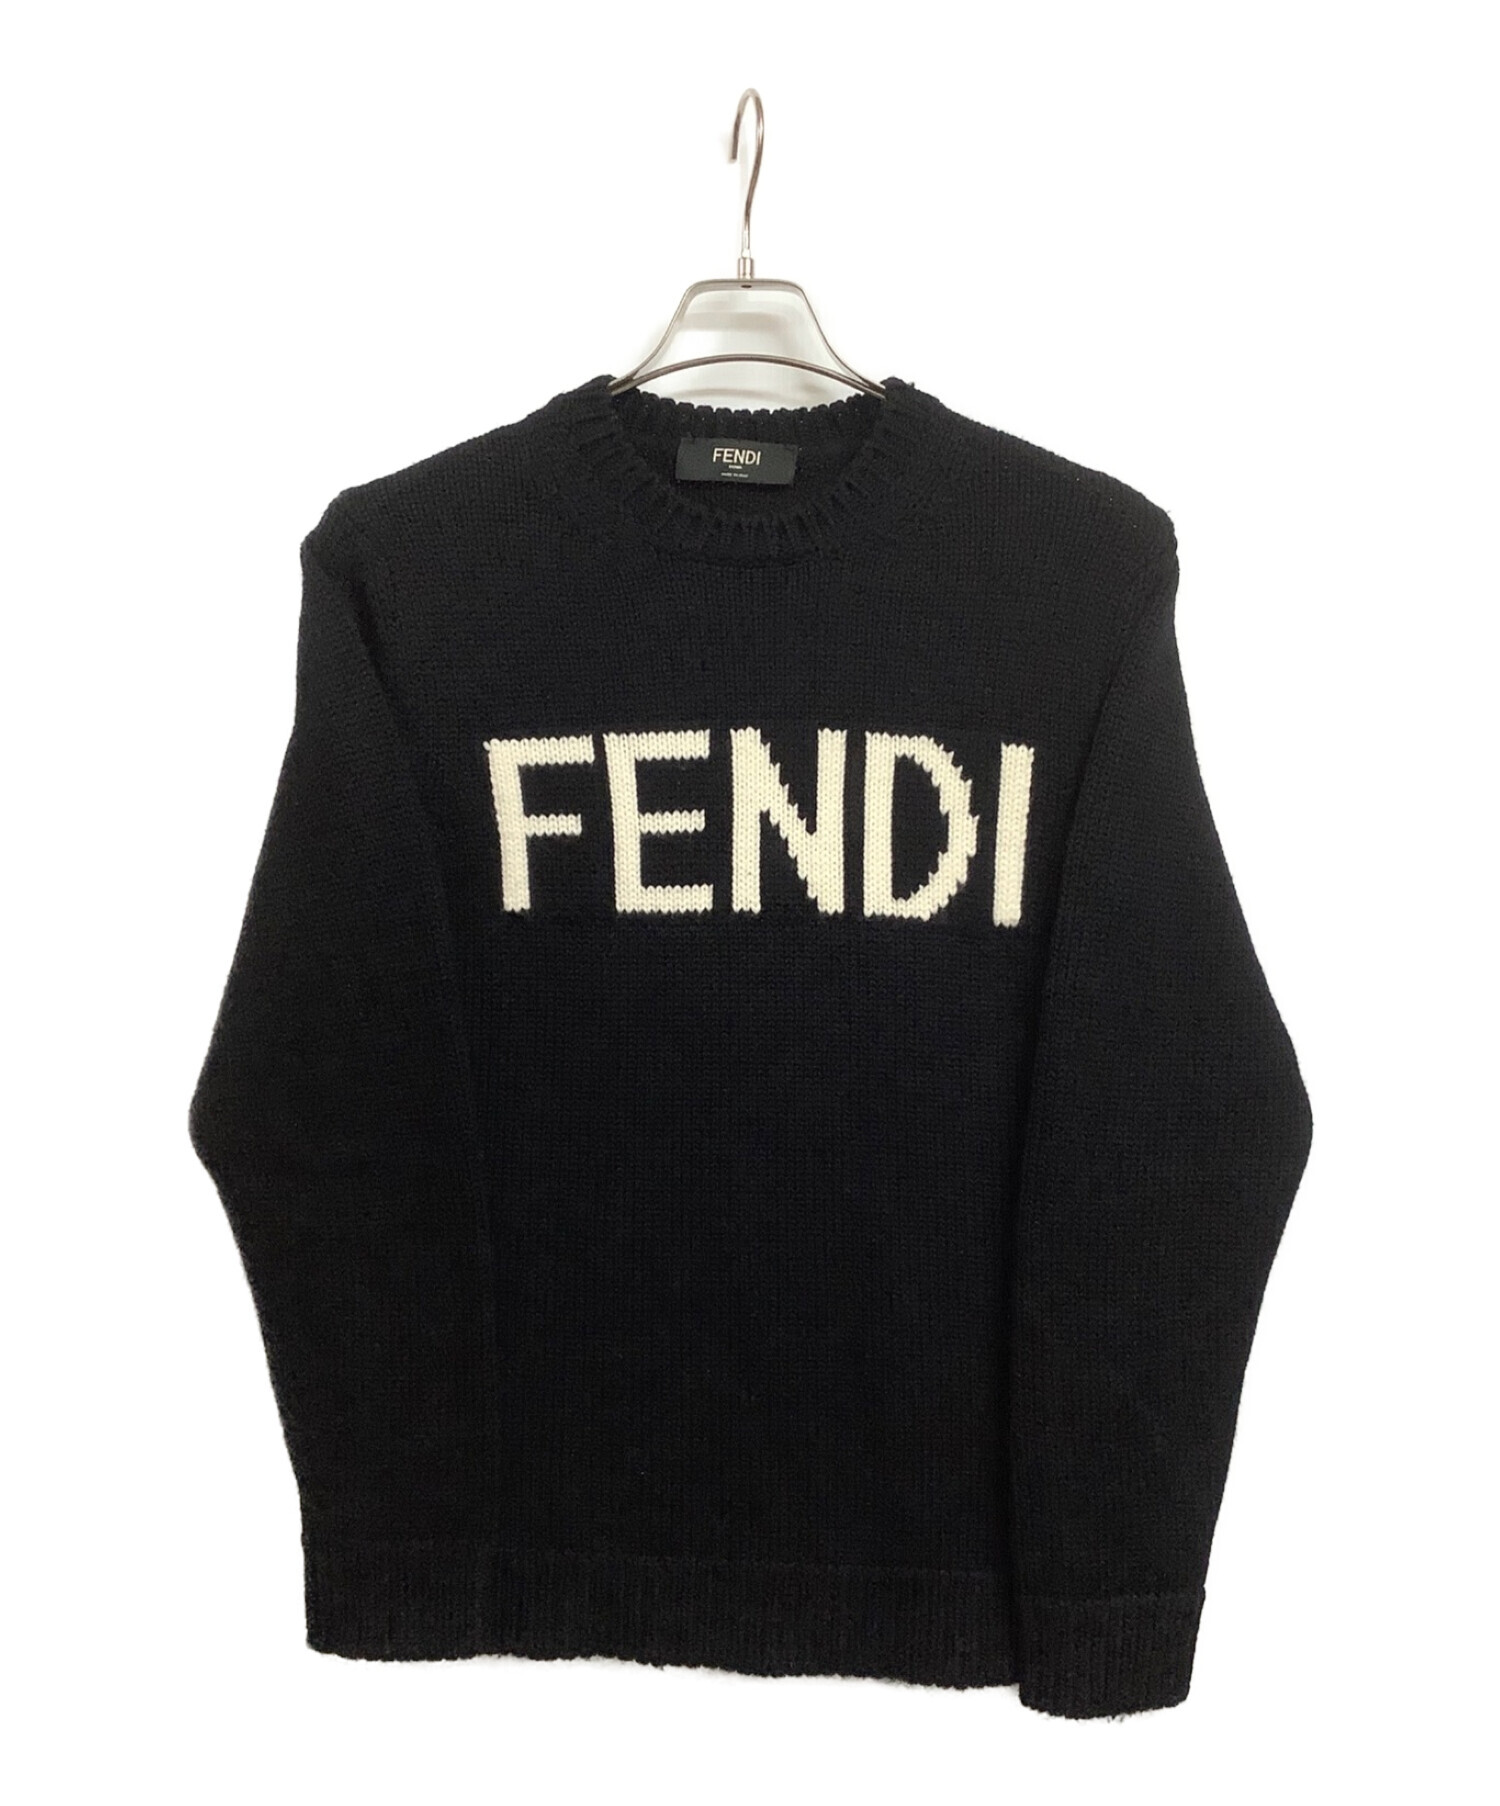 FENDI (フェンディ) ロゴニット ブラック サイズ:46 (M)